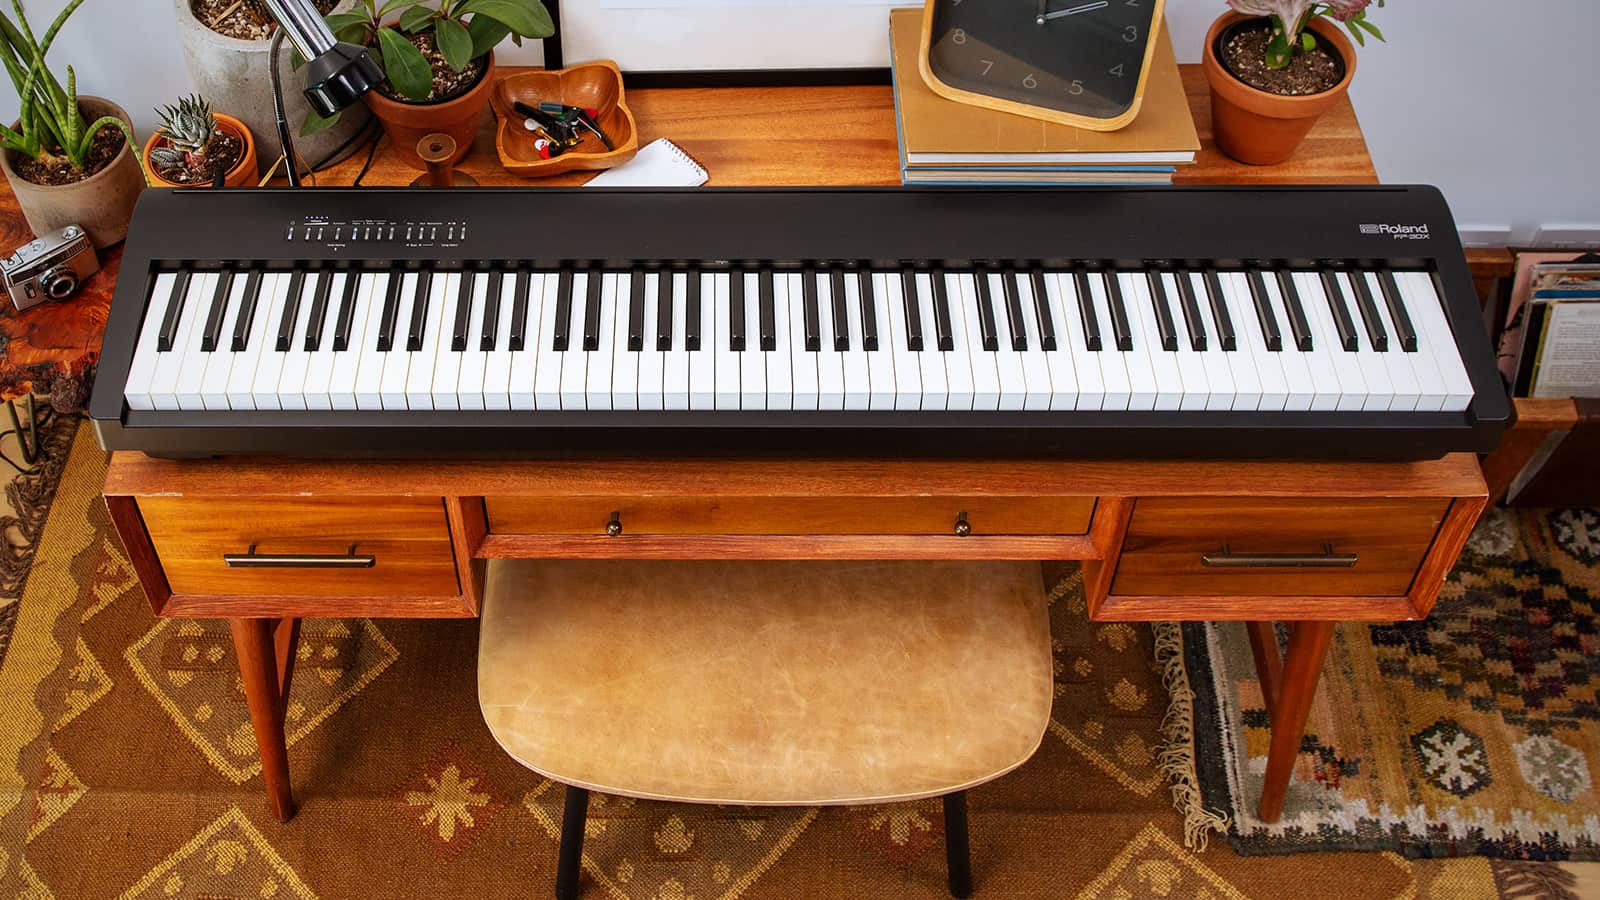 Roland FP-30X - günstiges Portable Piano mit tollen Features (Bildquelle: Roland)